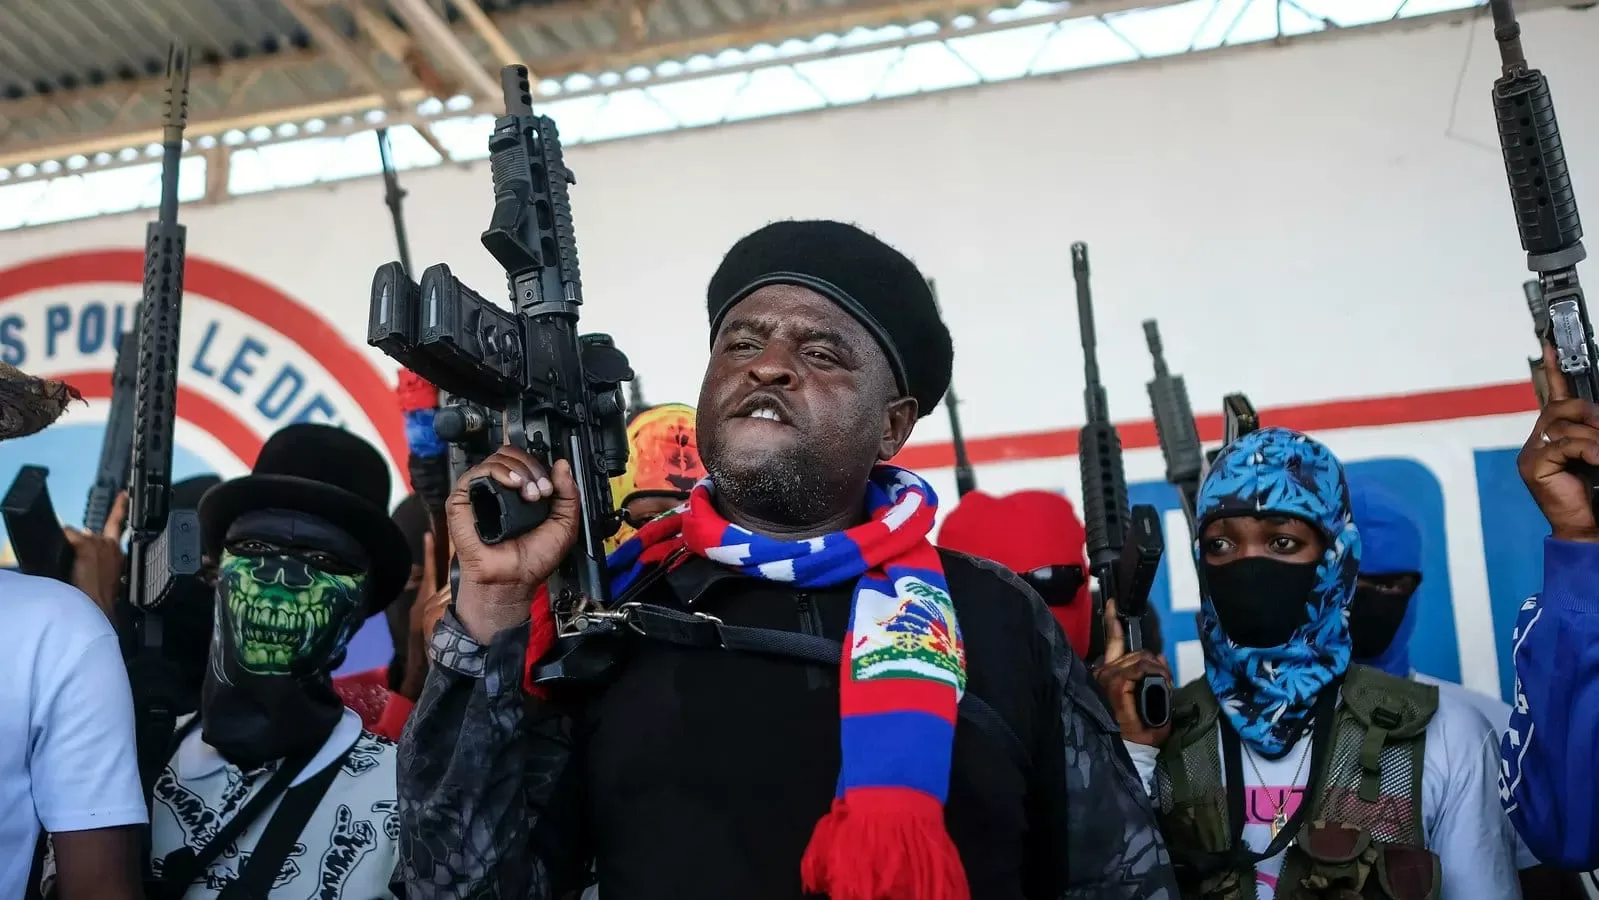 Chefe de gangue ameaça guerra civil e genocídio no Haiti